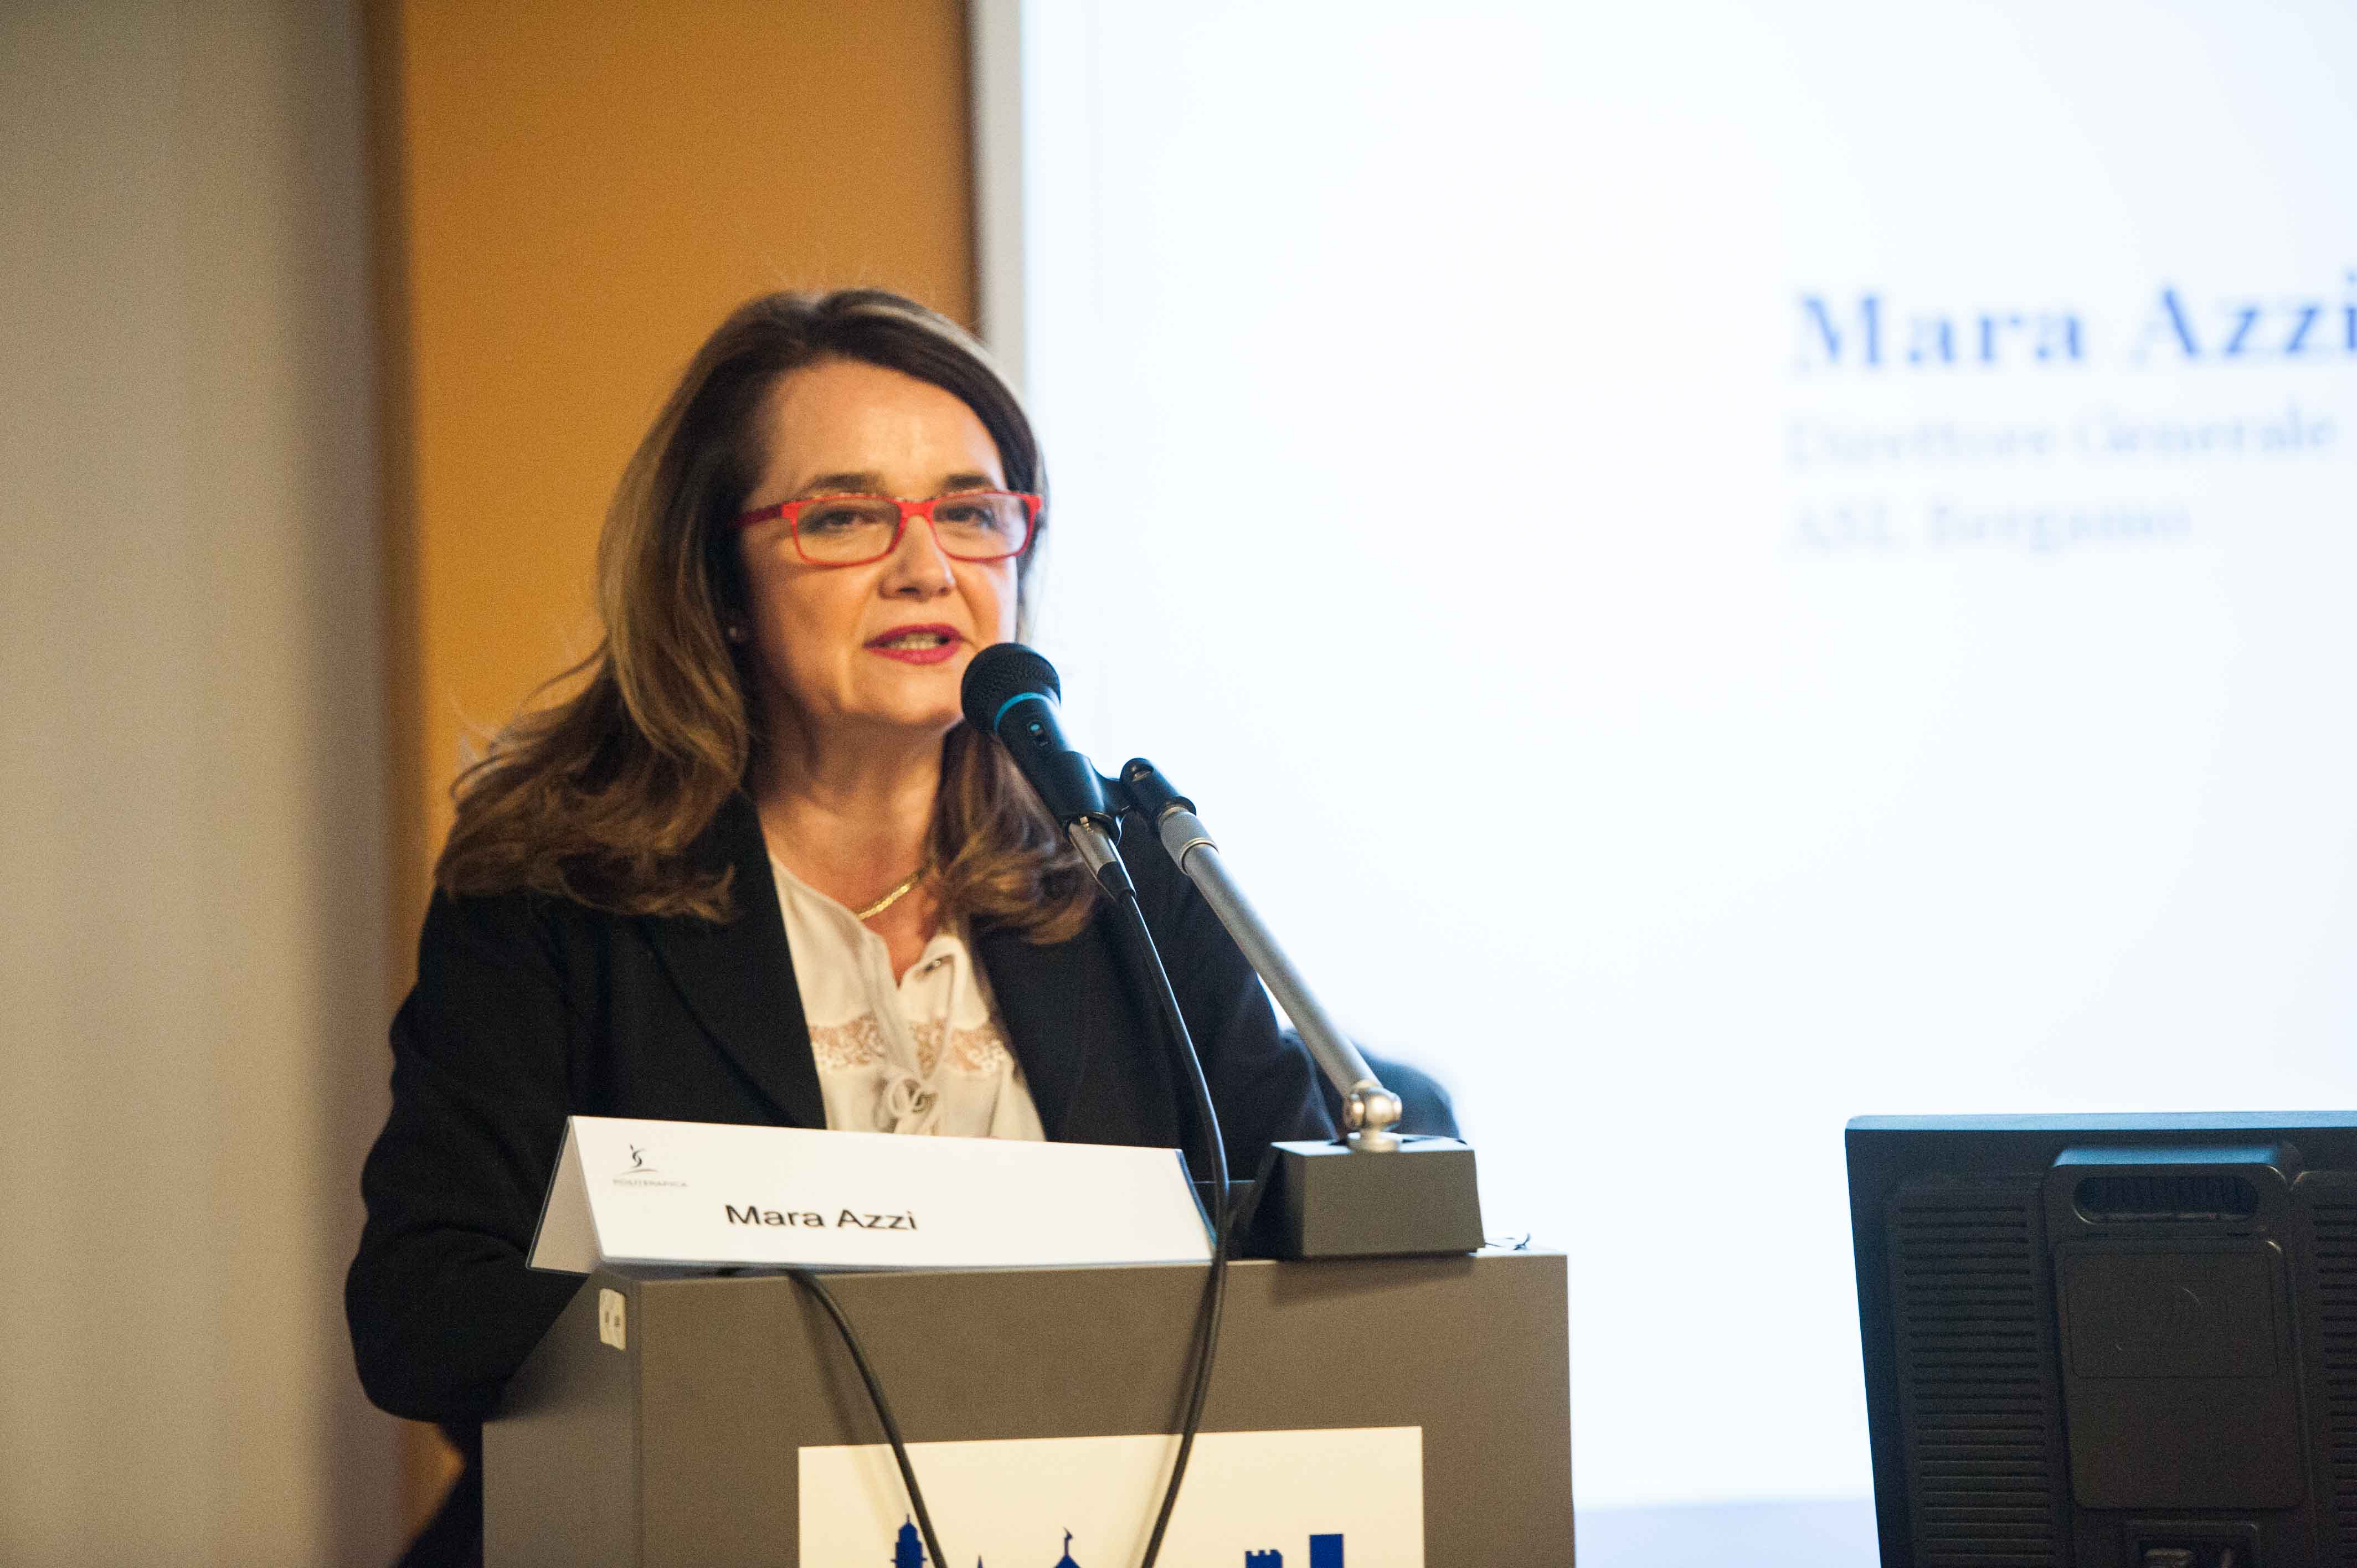 3.3.2015 - Interviene Mara Azzi, Direttore Generale ASL Bergamo